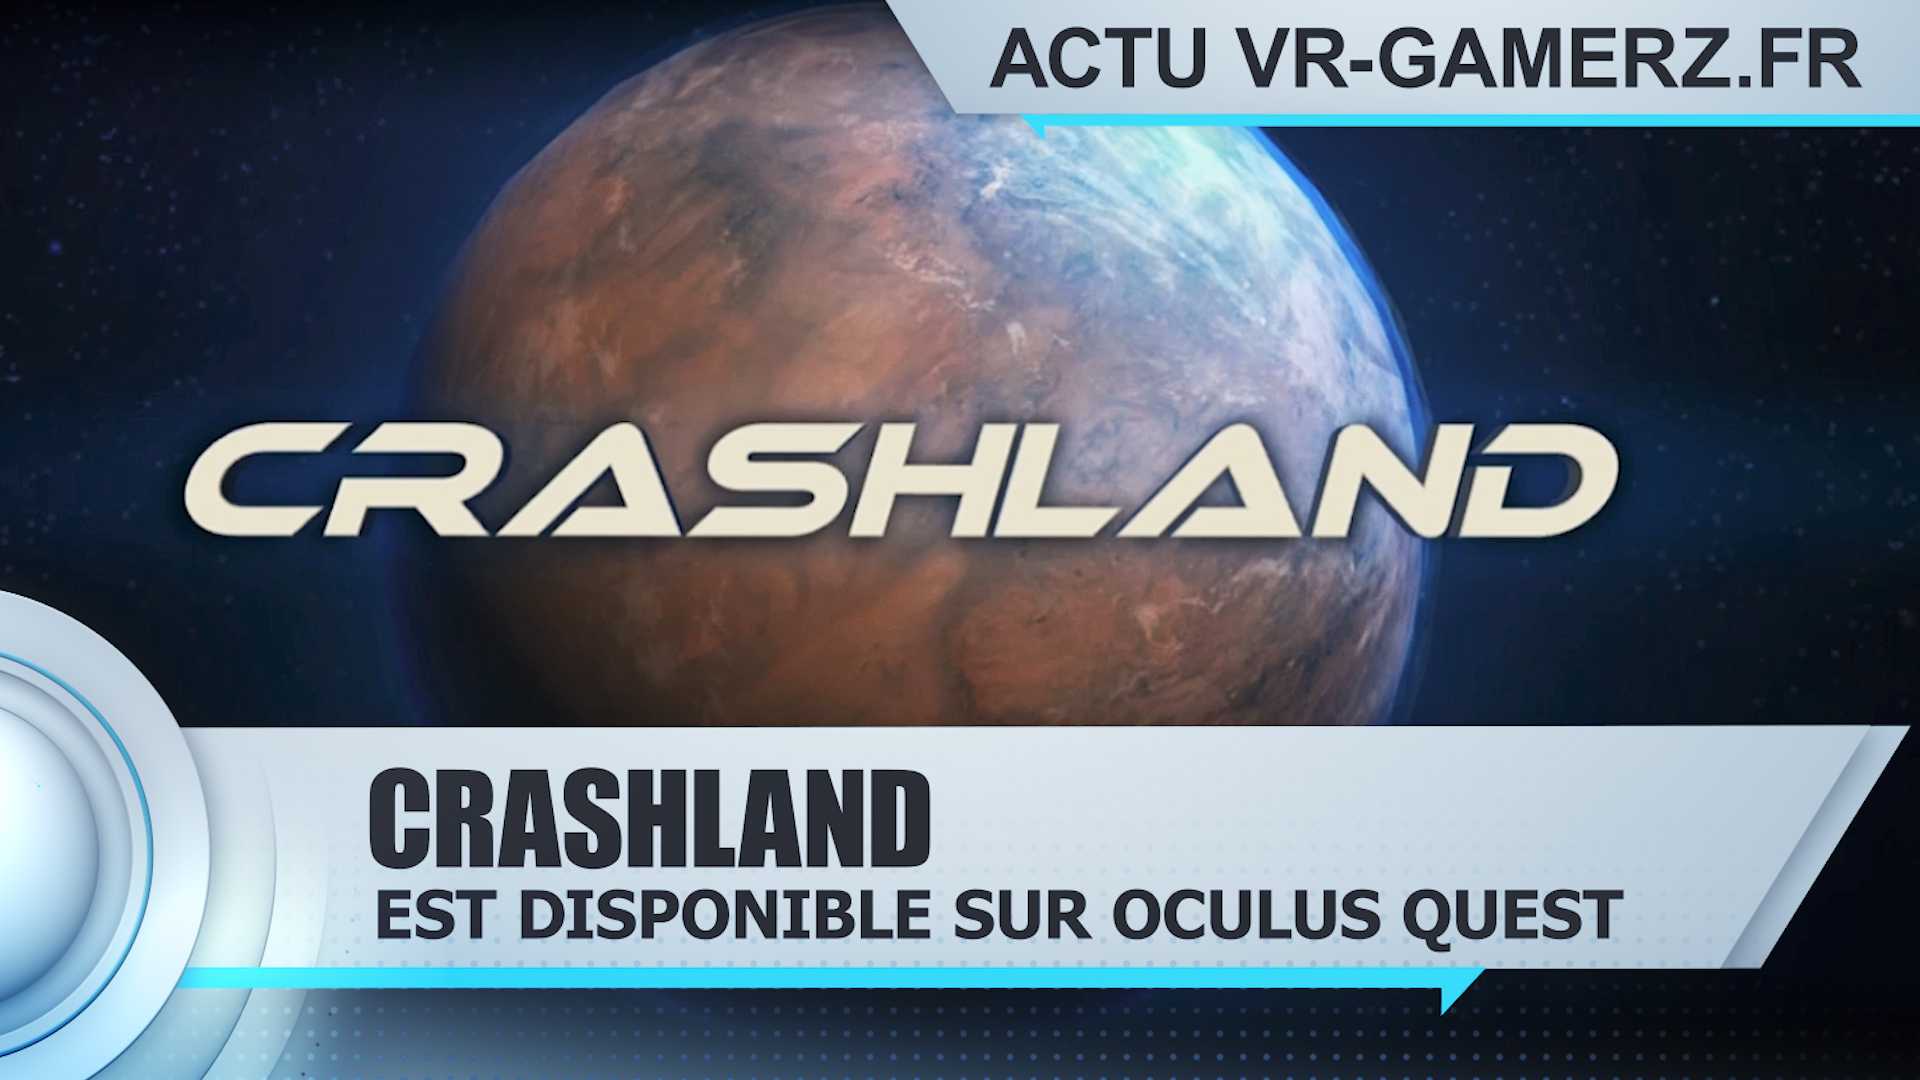 Crashland est disponible sur Oculus quest !